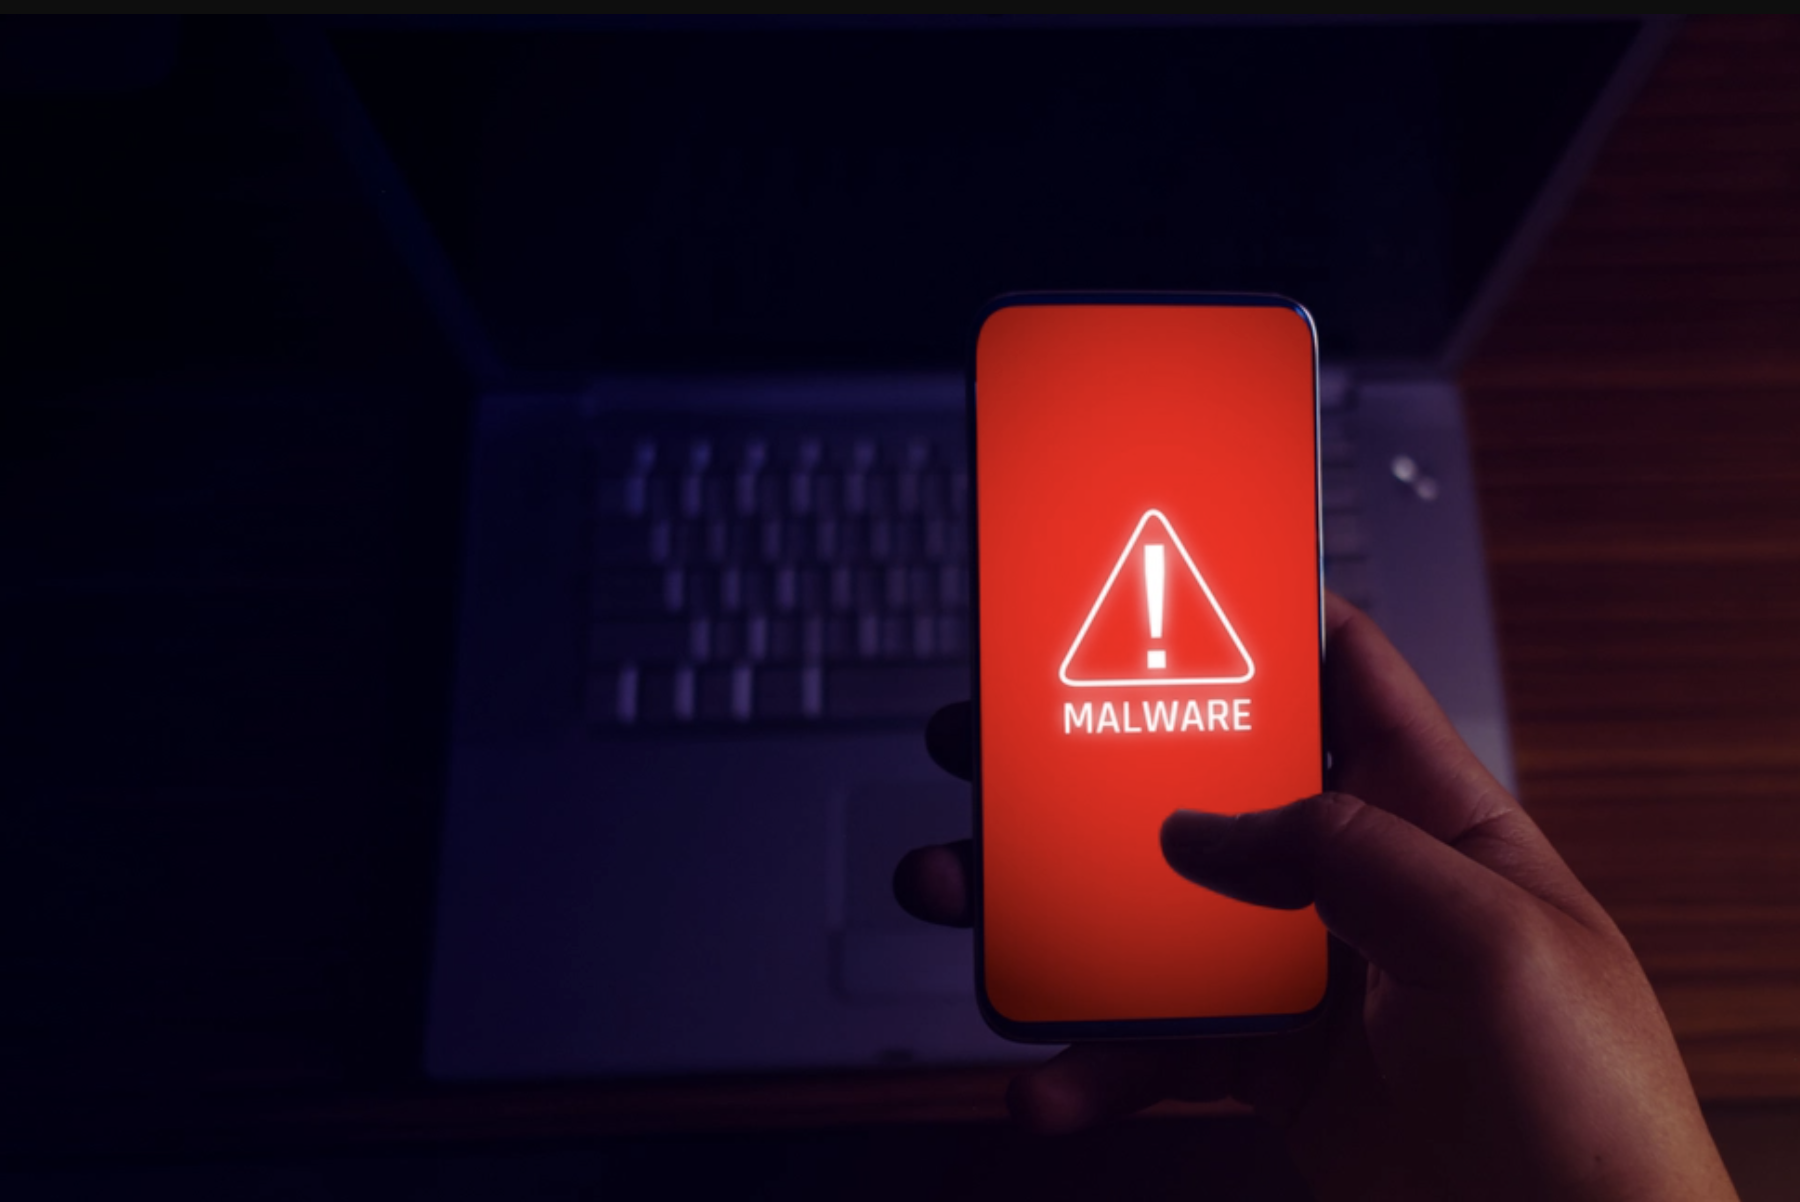 Gare à vos smartphones ! Un nouveau malware se répand massivement par SMS